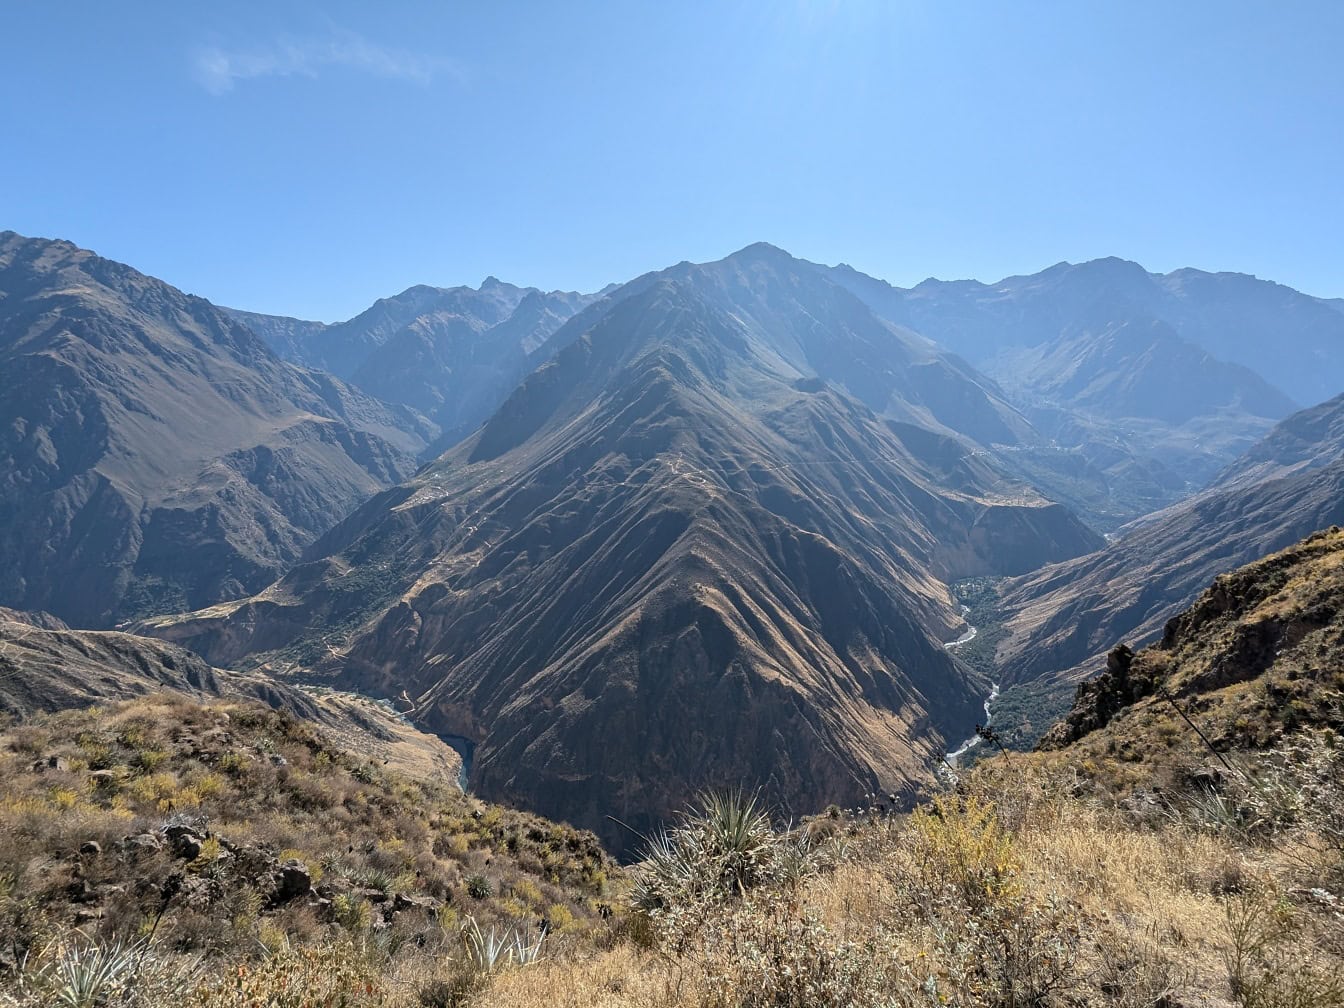 Toàn cảnh thung lũng với núi non và bầu trời xanh tại hẻm núi Colca ở Peru